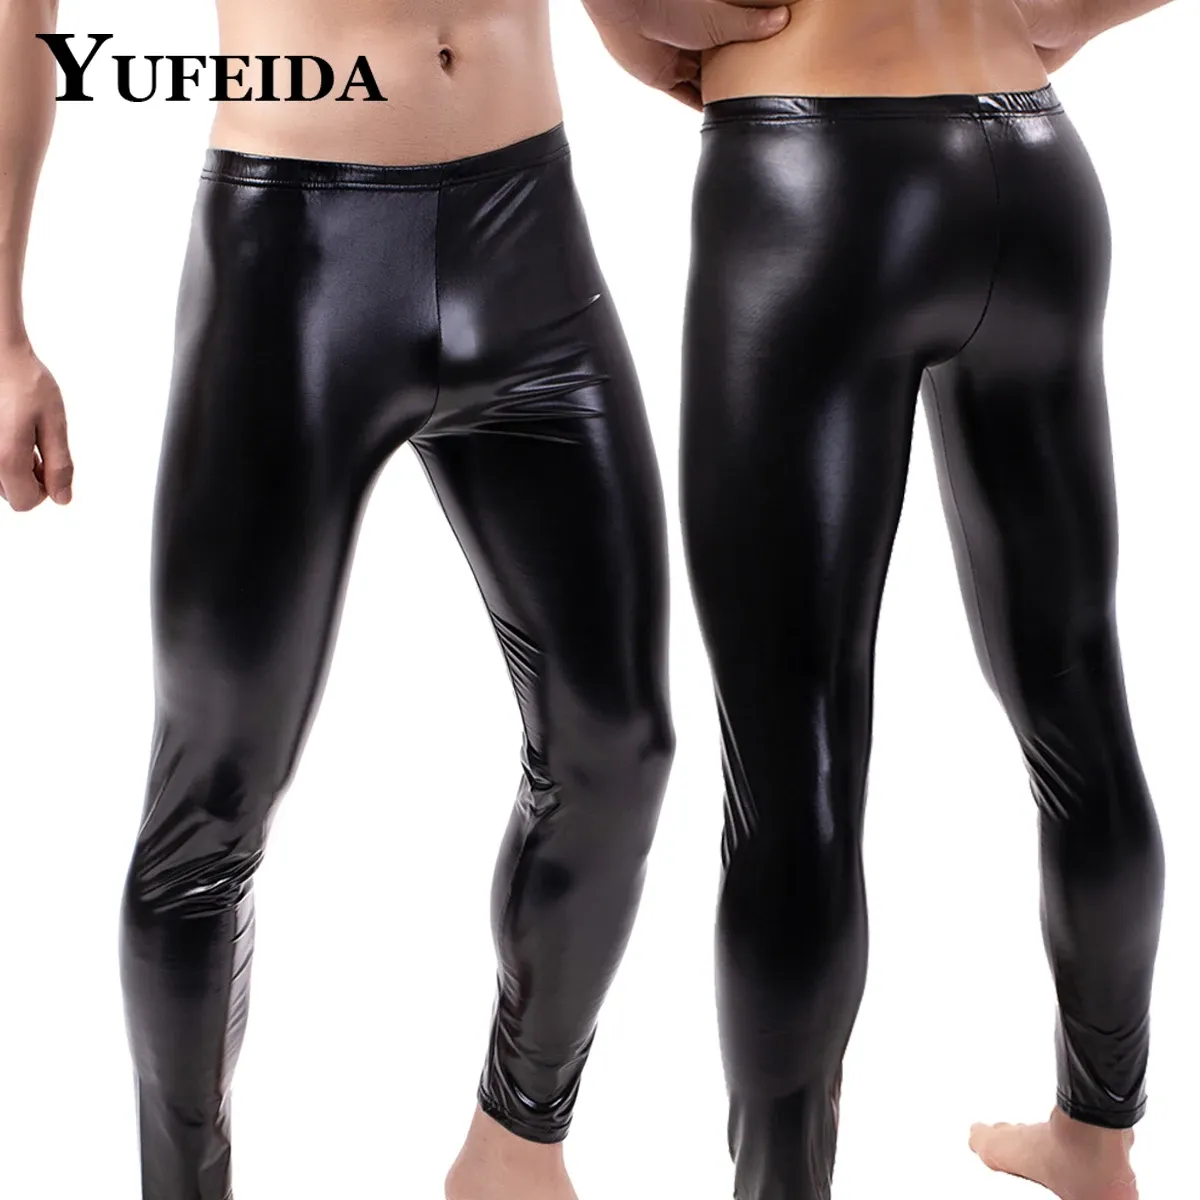 Spodnie Yufeida Męskie skórzane nogawki Pu Chudy torebki ciasne erotyczne pokusa spodni klubowy